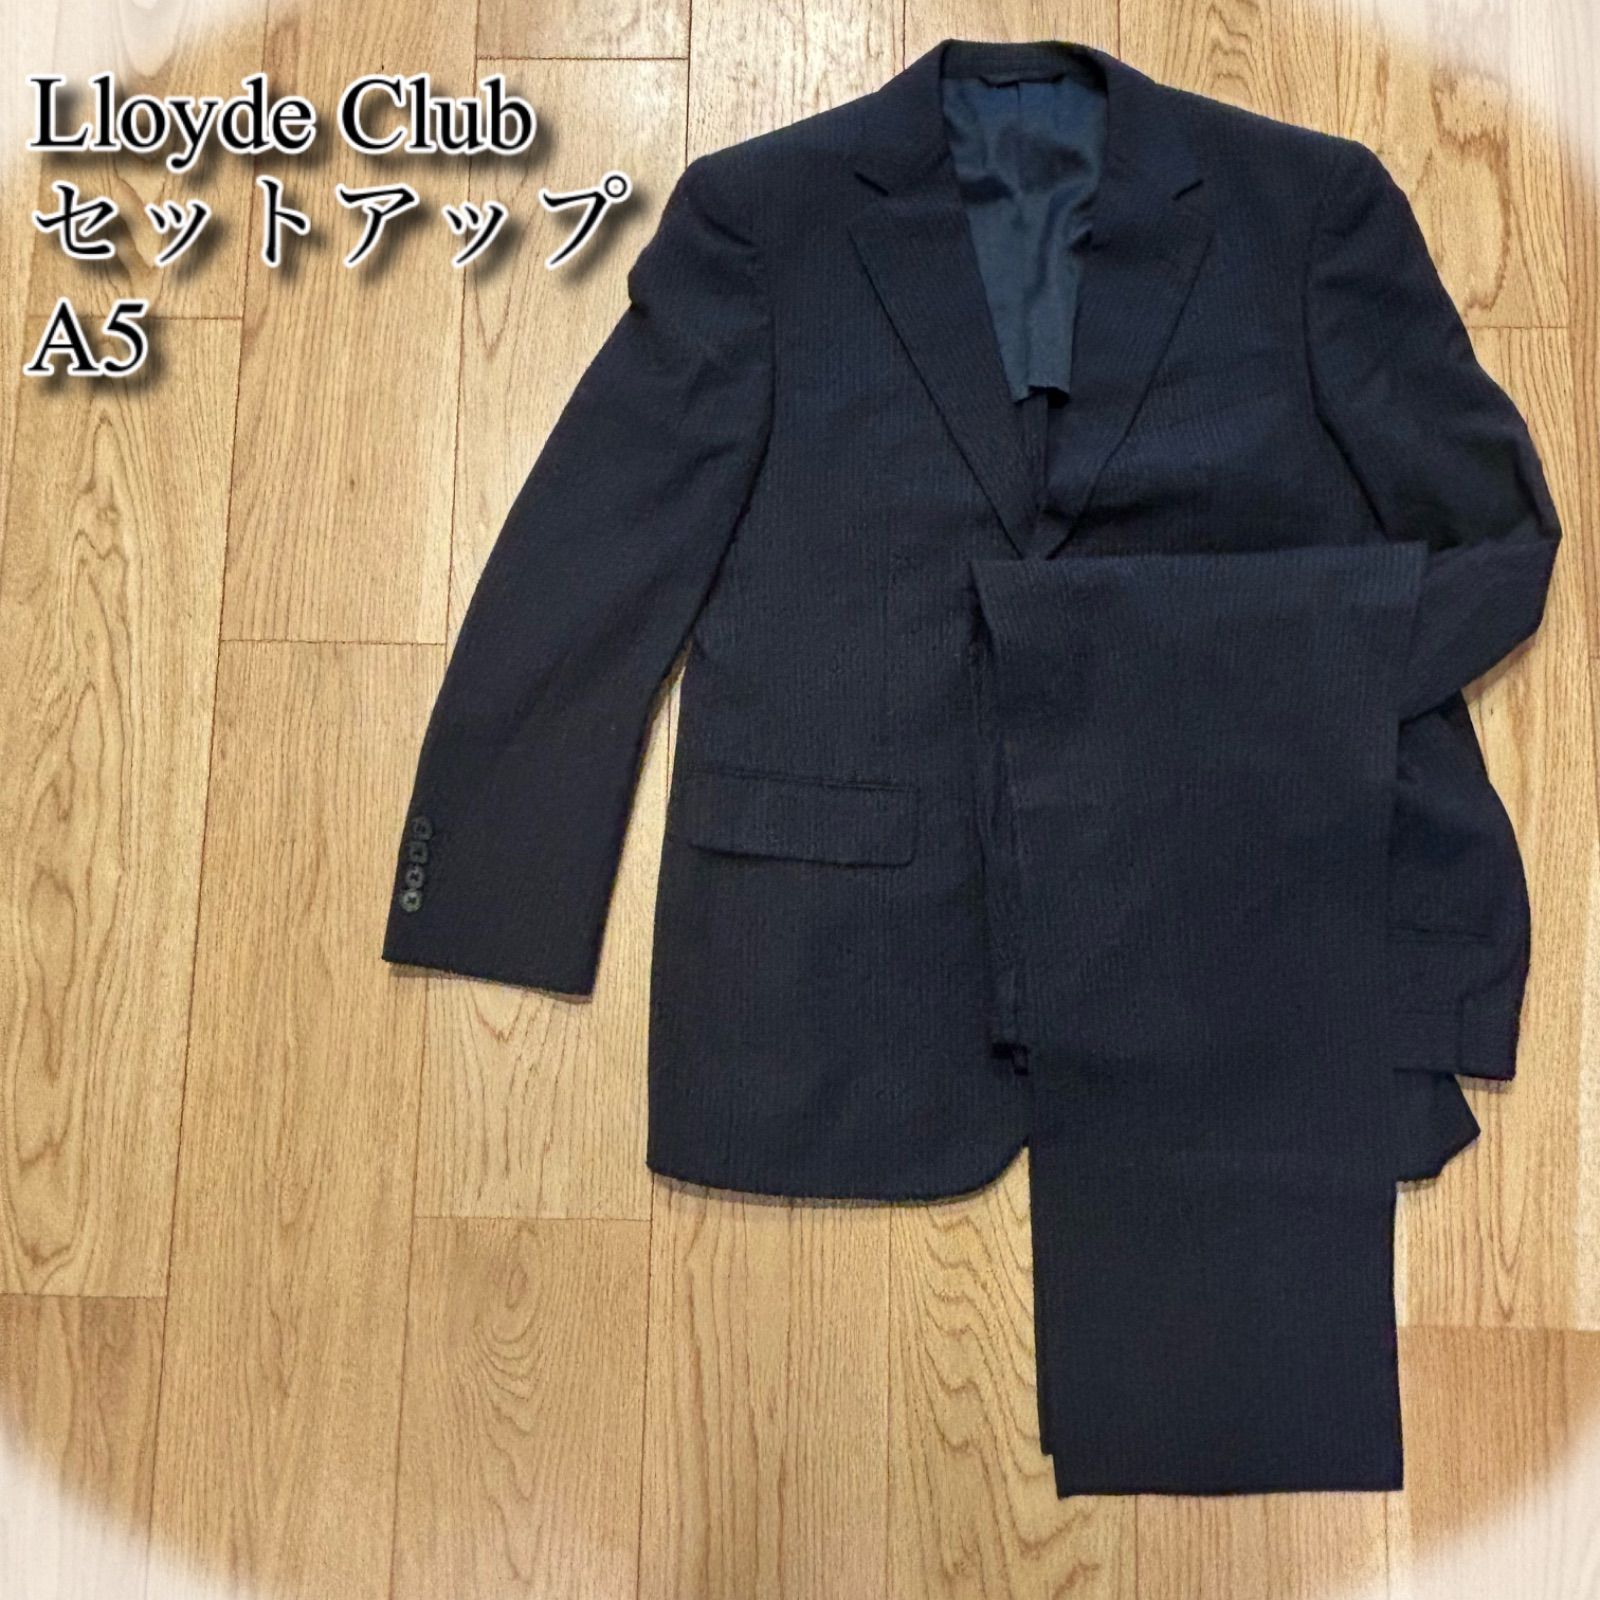 Lloyd Club ロイドクラブ コート カジュアル ビジネス - ジャケット 